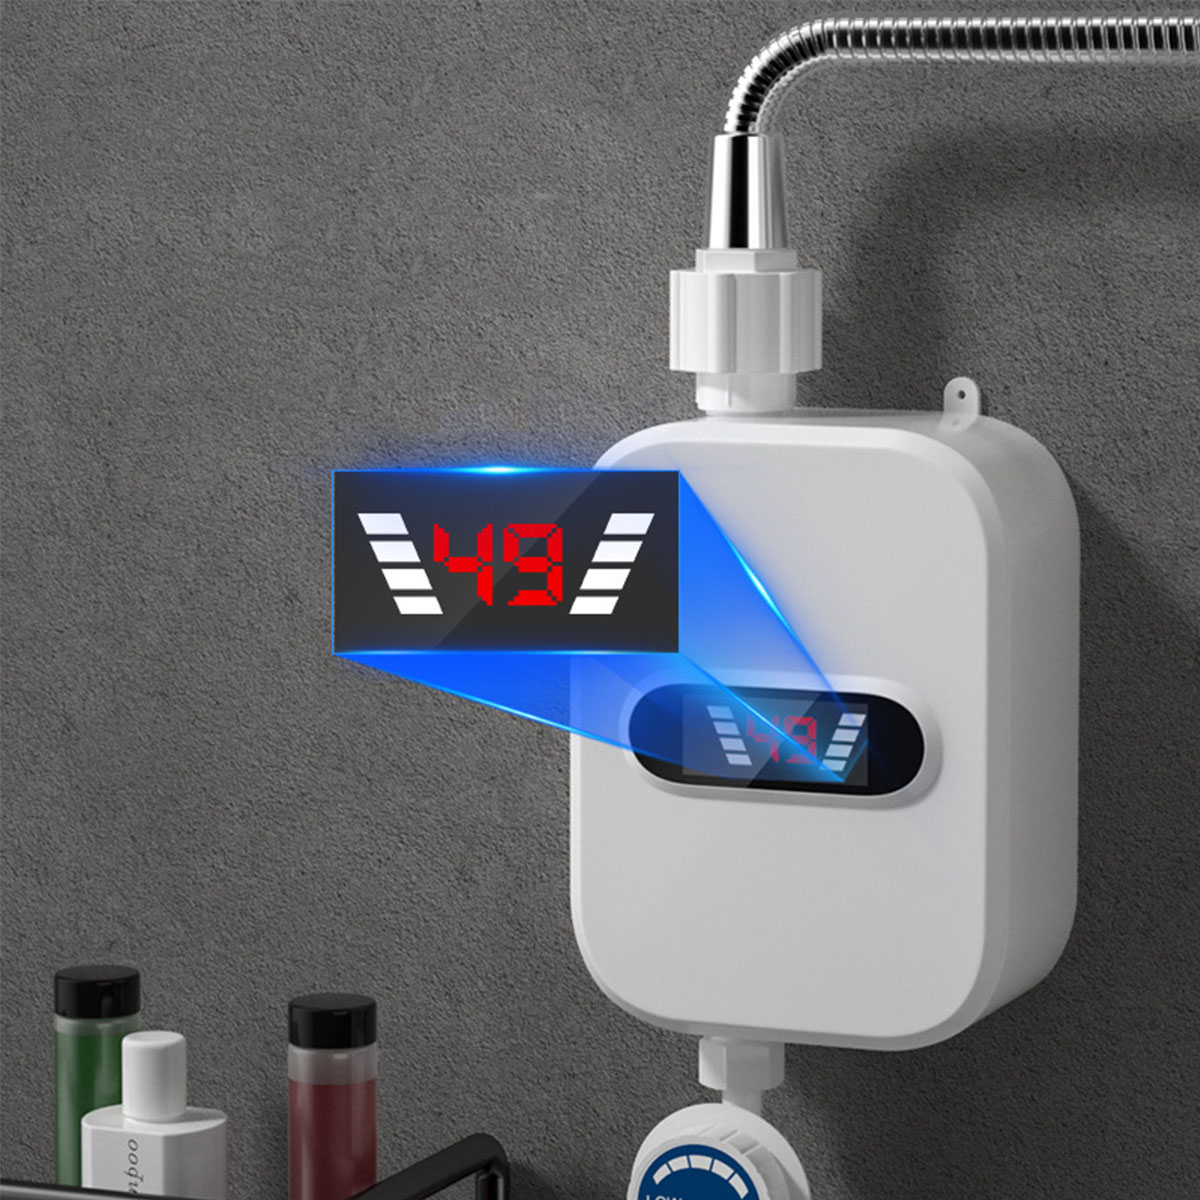 BRIGHTAKE Sofortiges Warmwasser - Thermostat-Durchlauferhitzer-Duschkopf-Set Warmwasserbereiter Kompakte Brausegarnitur